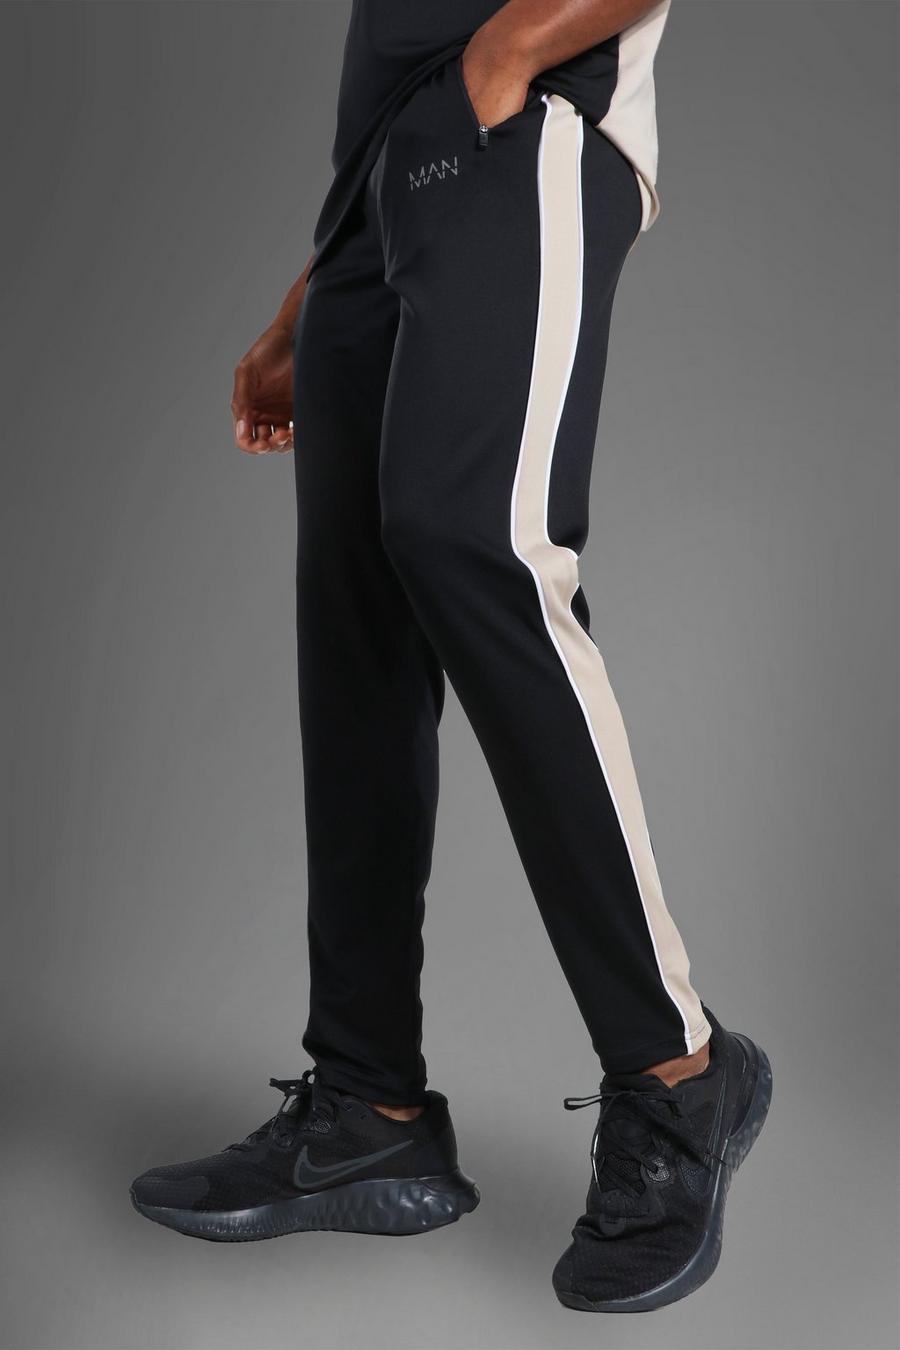 שחור מכנסי ריצה ספורטיביים עם פס בצד וכיתוב Man image number 1